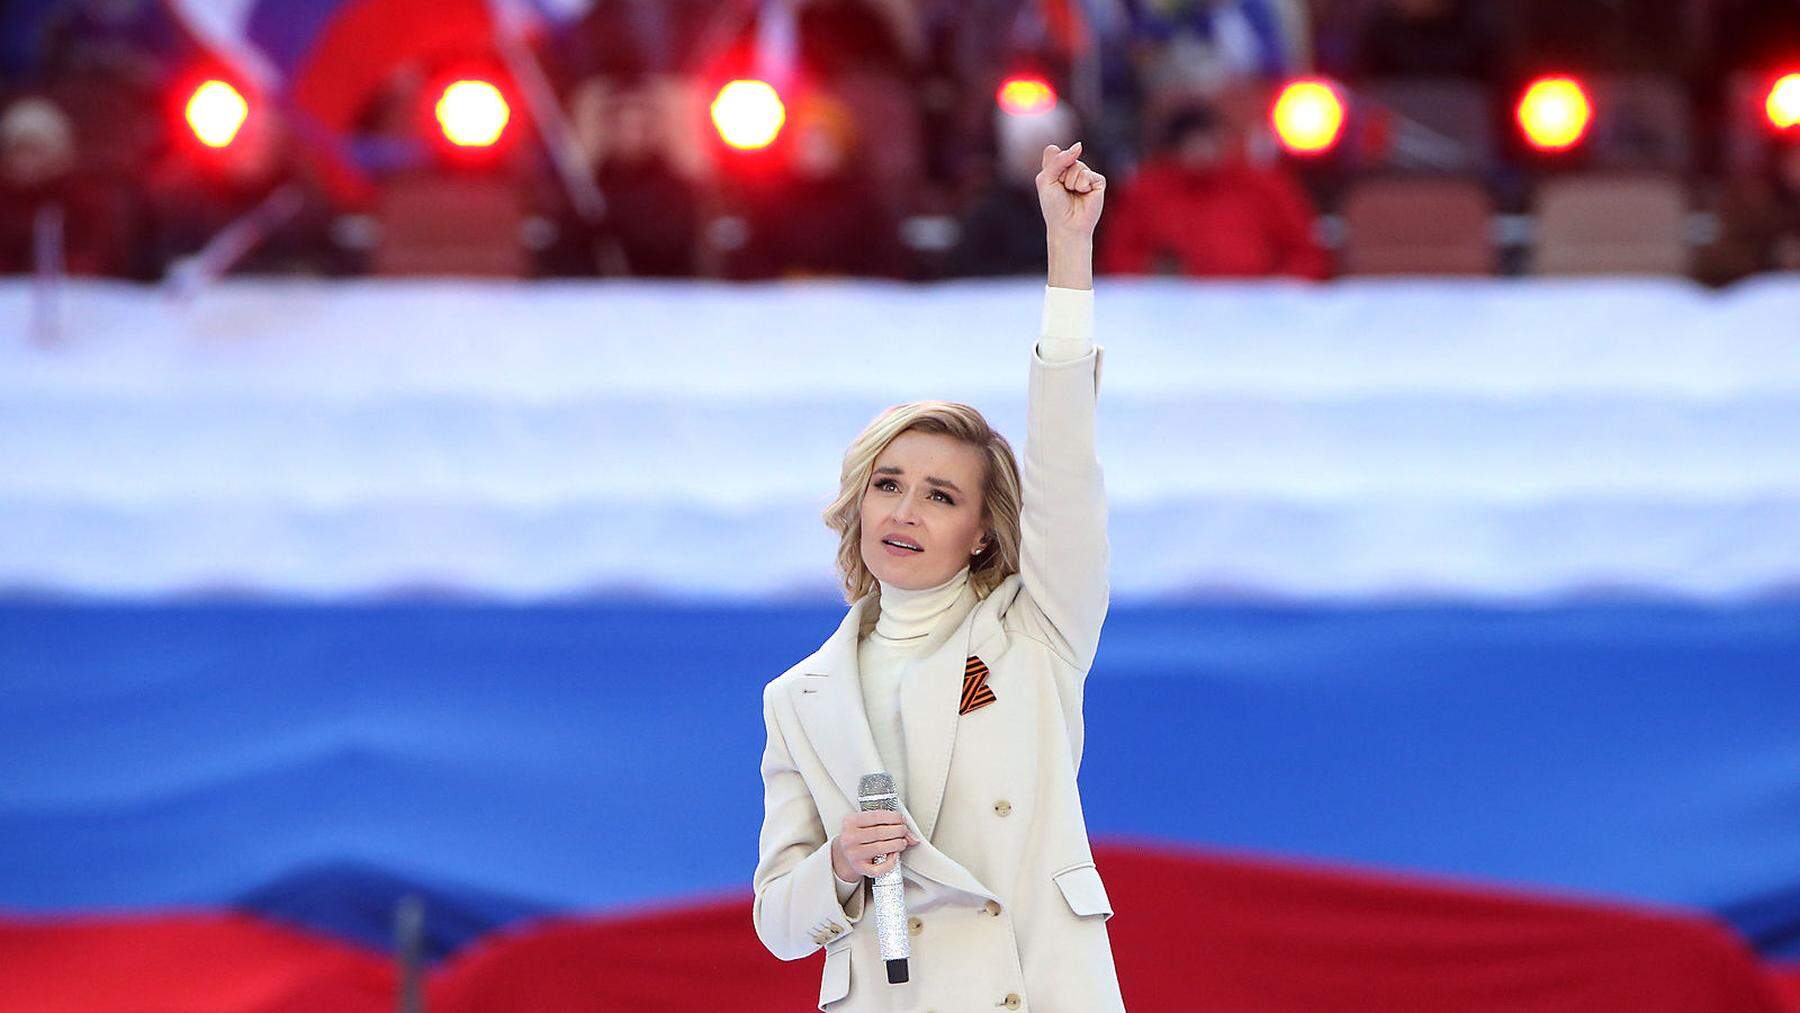 Schönstes Gesicht der Pro-Putin-Starfraktion ist die 35-jährige Popsängerin Polina Gagarina, 2015 Zweite beim Eurovision Song Contest. Hier beim Moskauer Konzert mit Putin am 18. März.